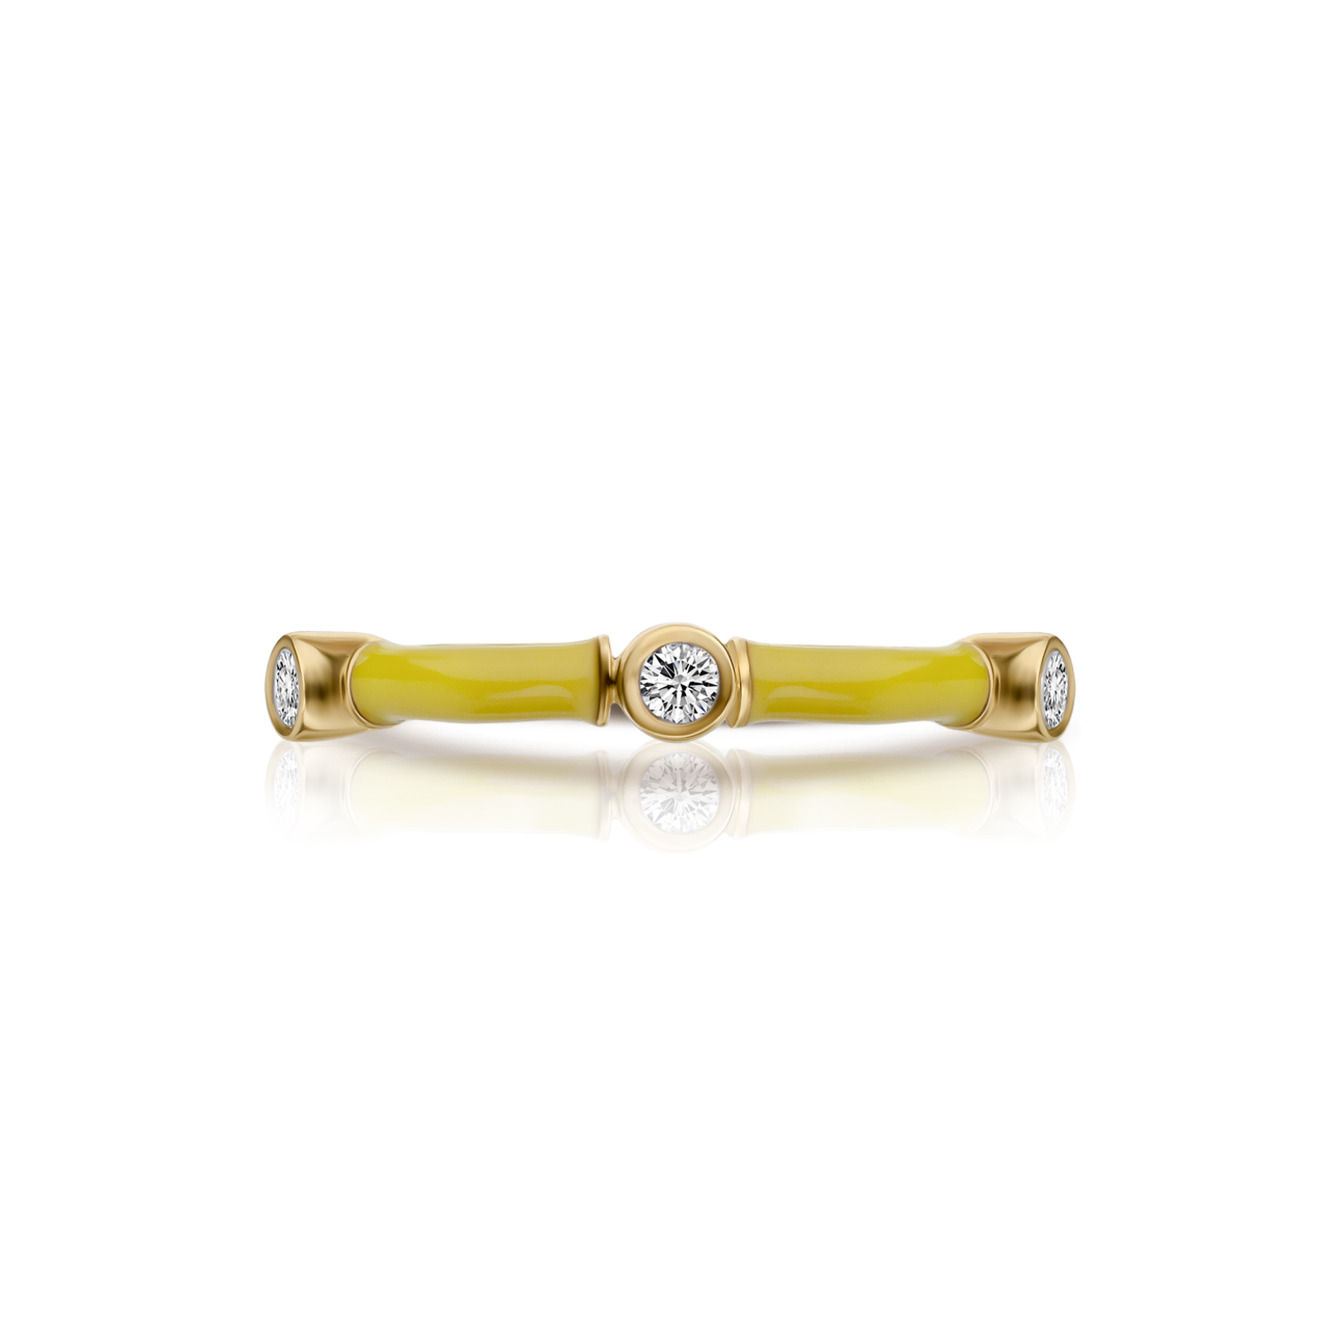 RS1912 X DANIILBERG Кольцо из желтого золота с эмалью и бриллиантами CANDY кольцо из желтого золота с бриллиантами хрусталем